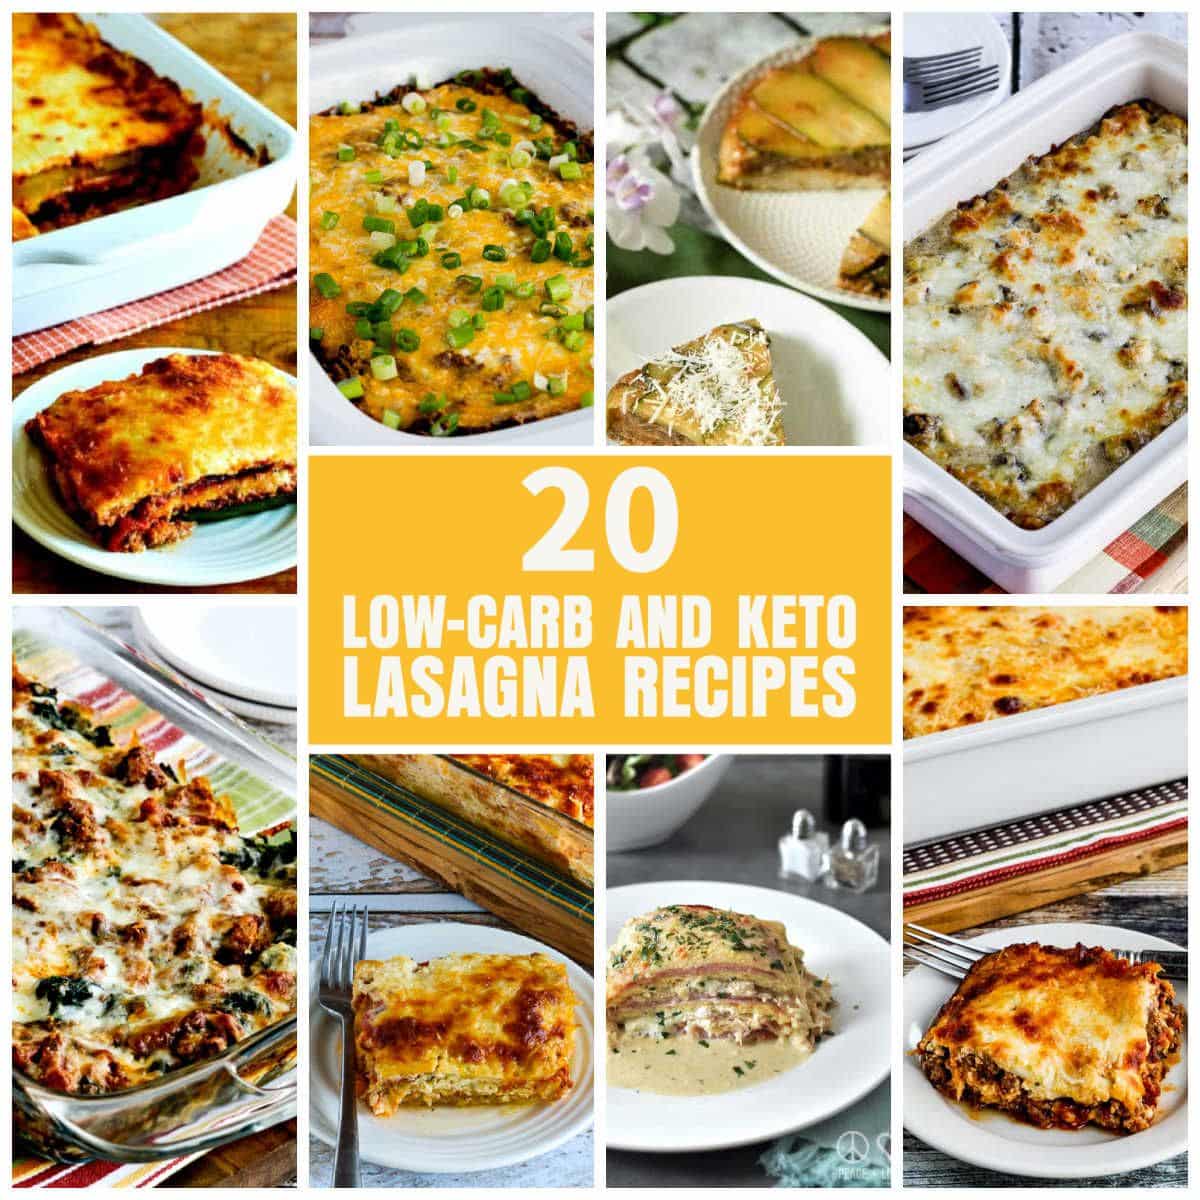 20 Low-Carb and Keto Lasagna Recipes